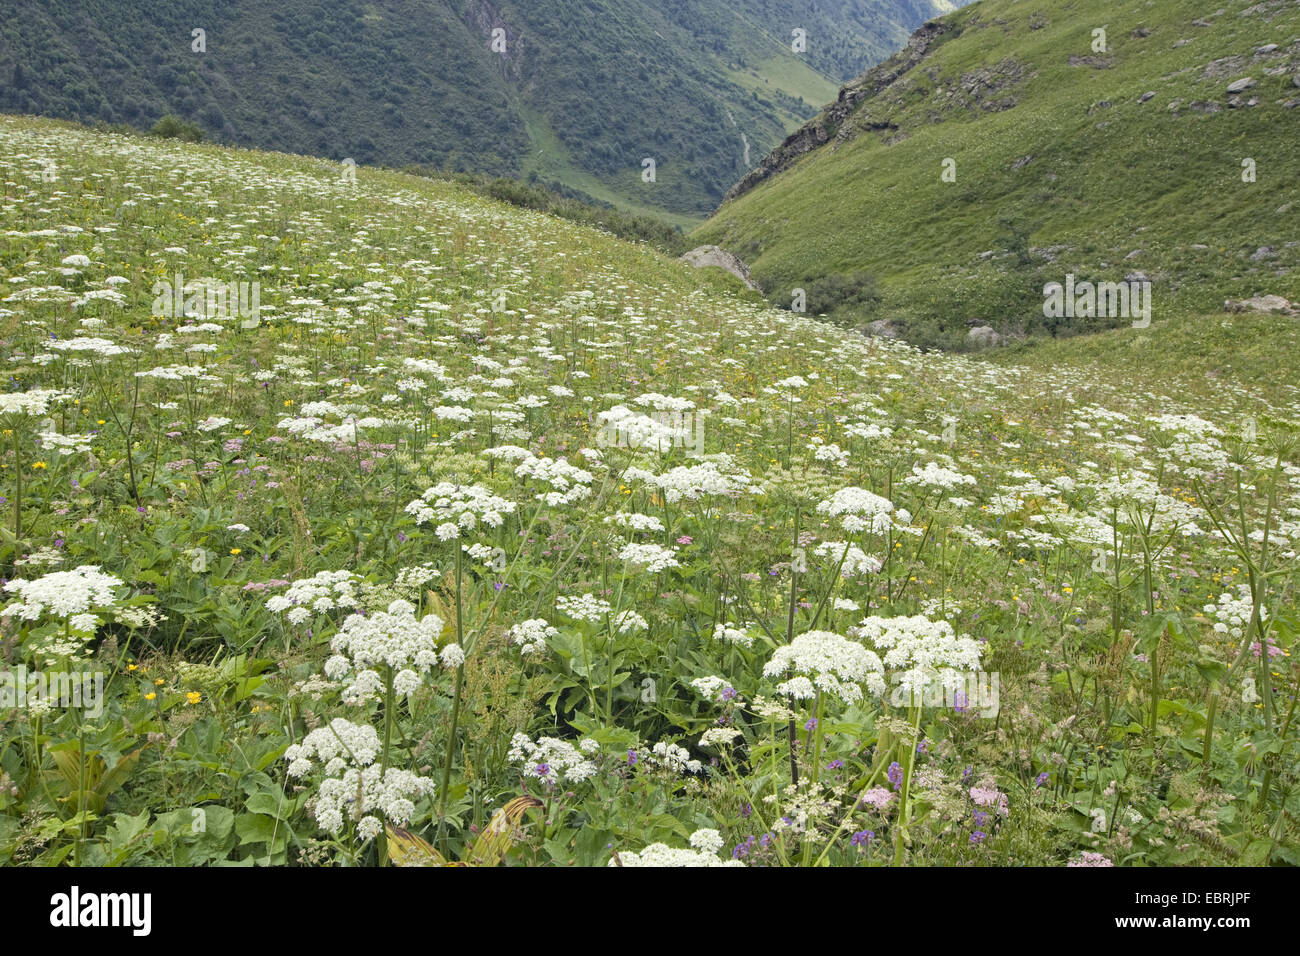 Cow parsnip, Common Hogweed, Hogweed, American cow-parsnip (Heracleum sphondylium), In Alpine meadow, France, Savoie, Vanoise National Park Stock Photo